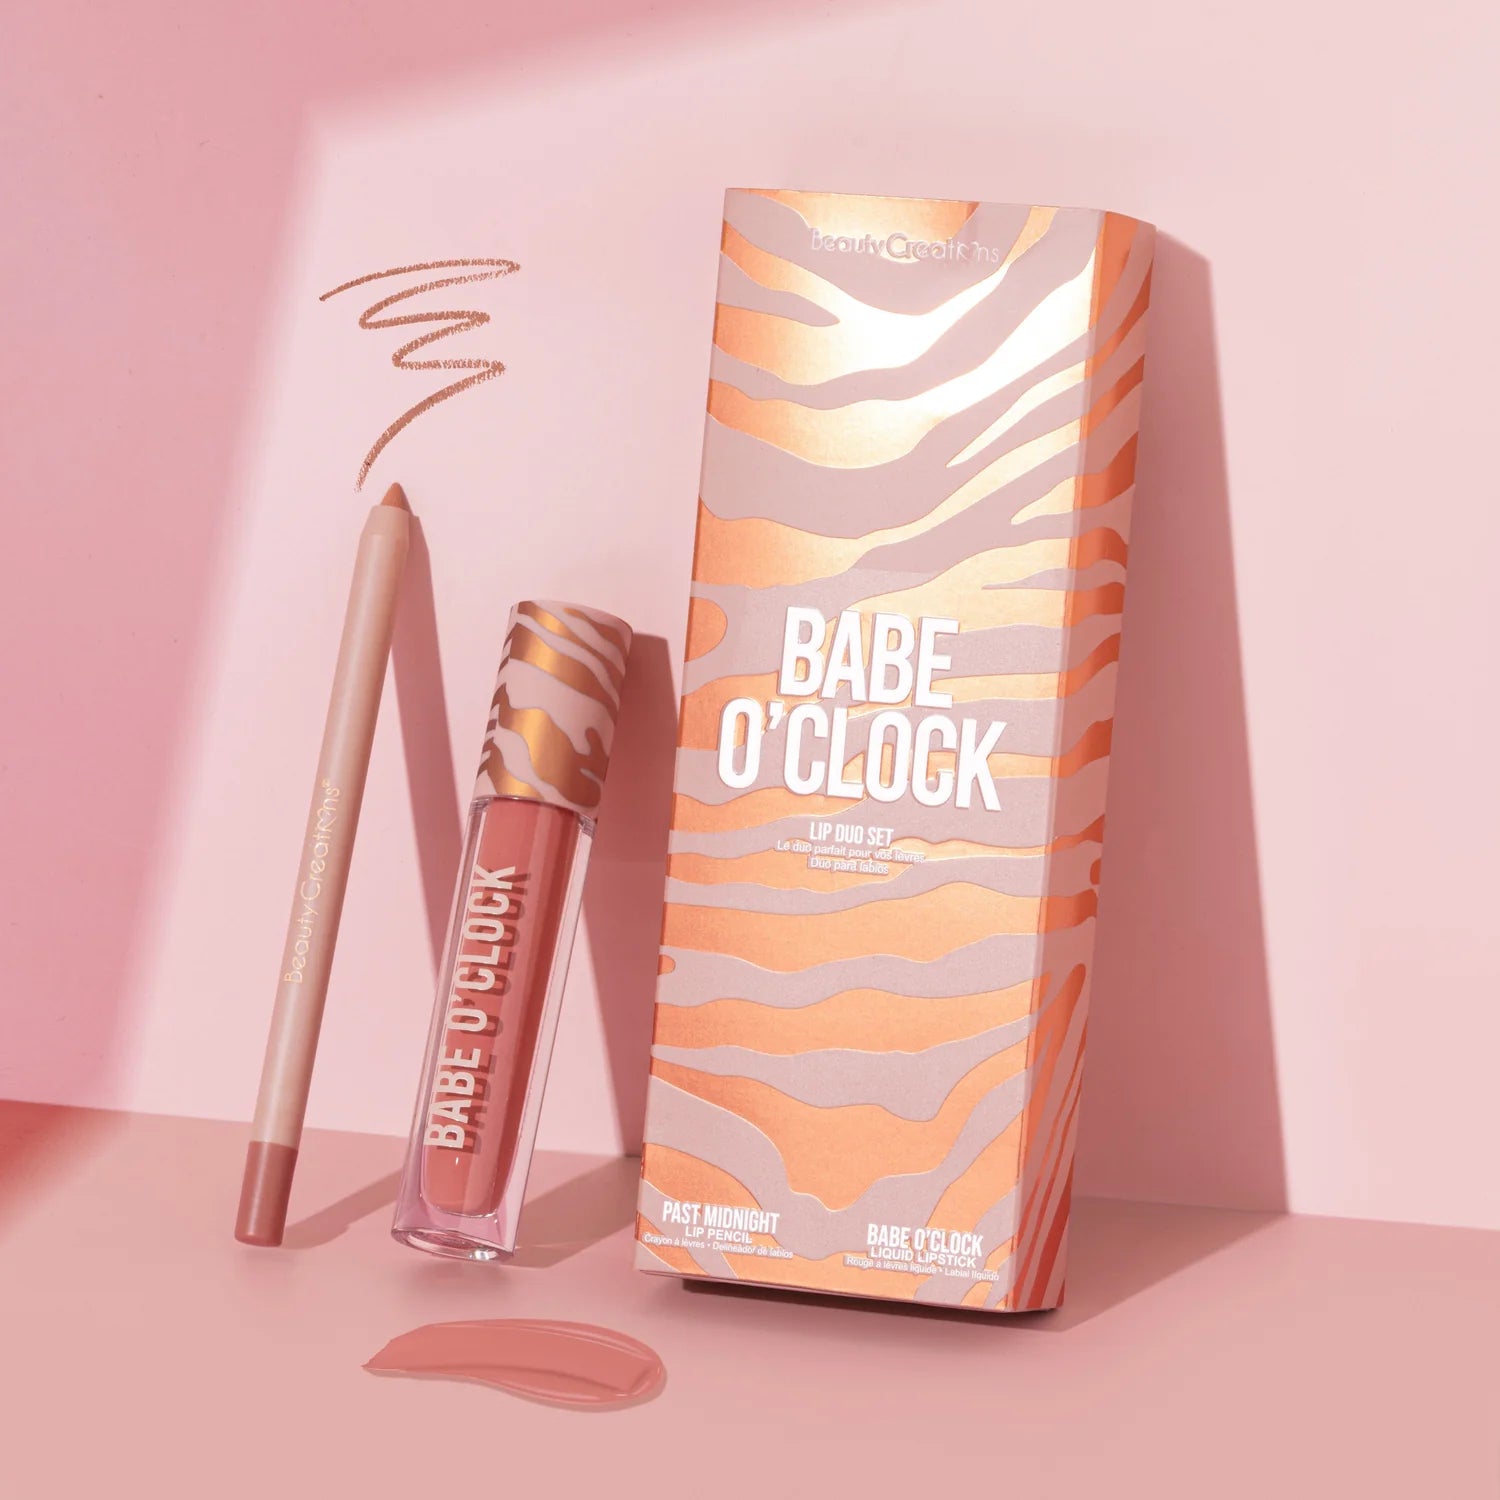 Beauty Creations - Availabilippy Lip Kit Babe O'Clock